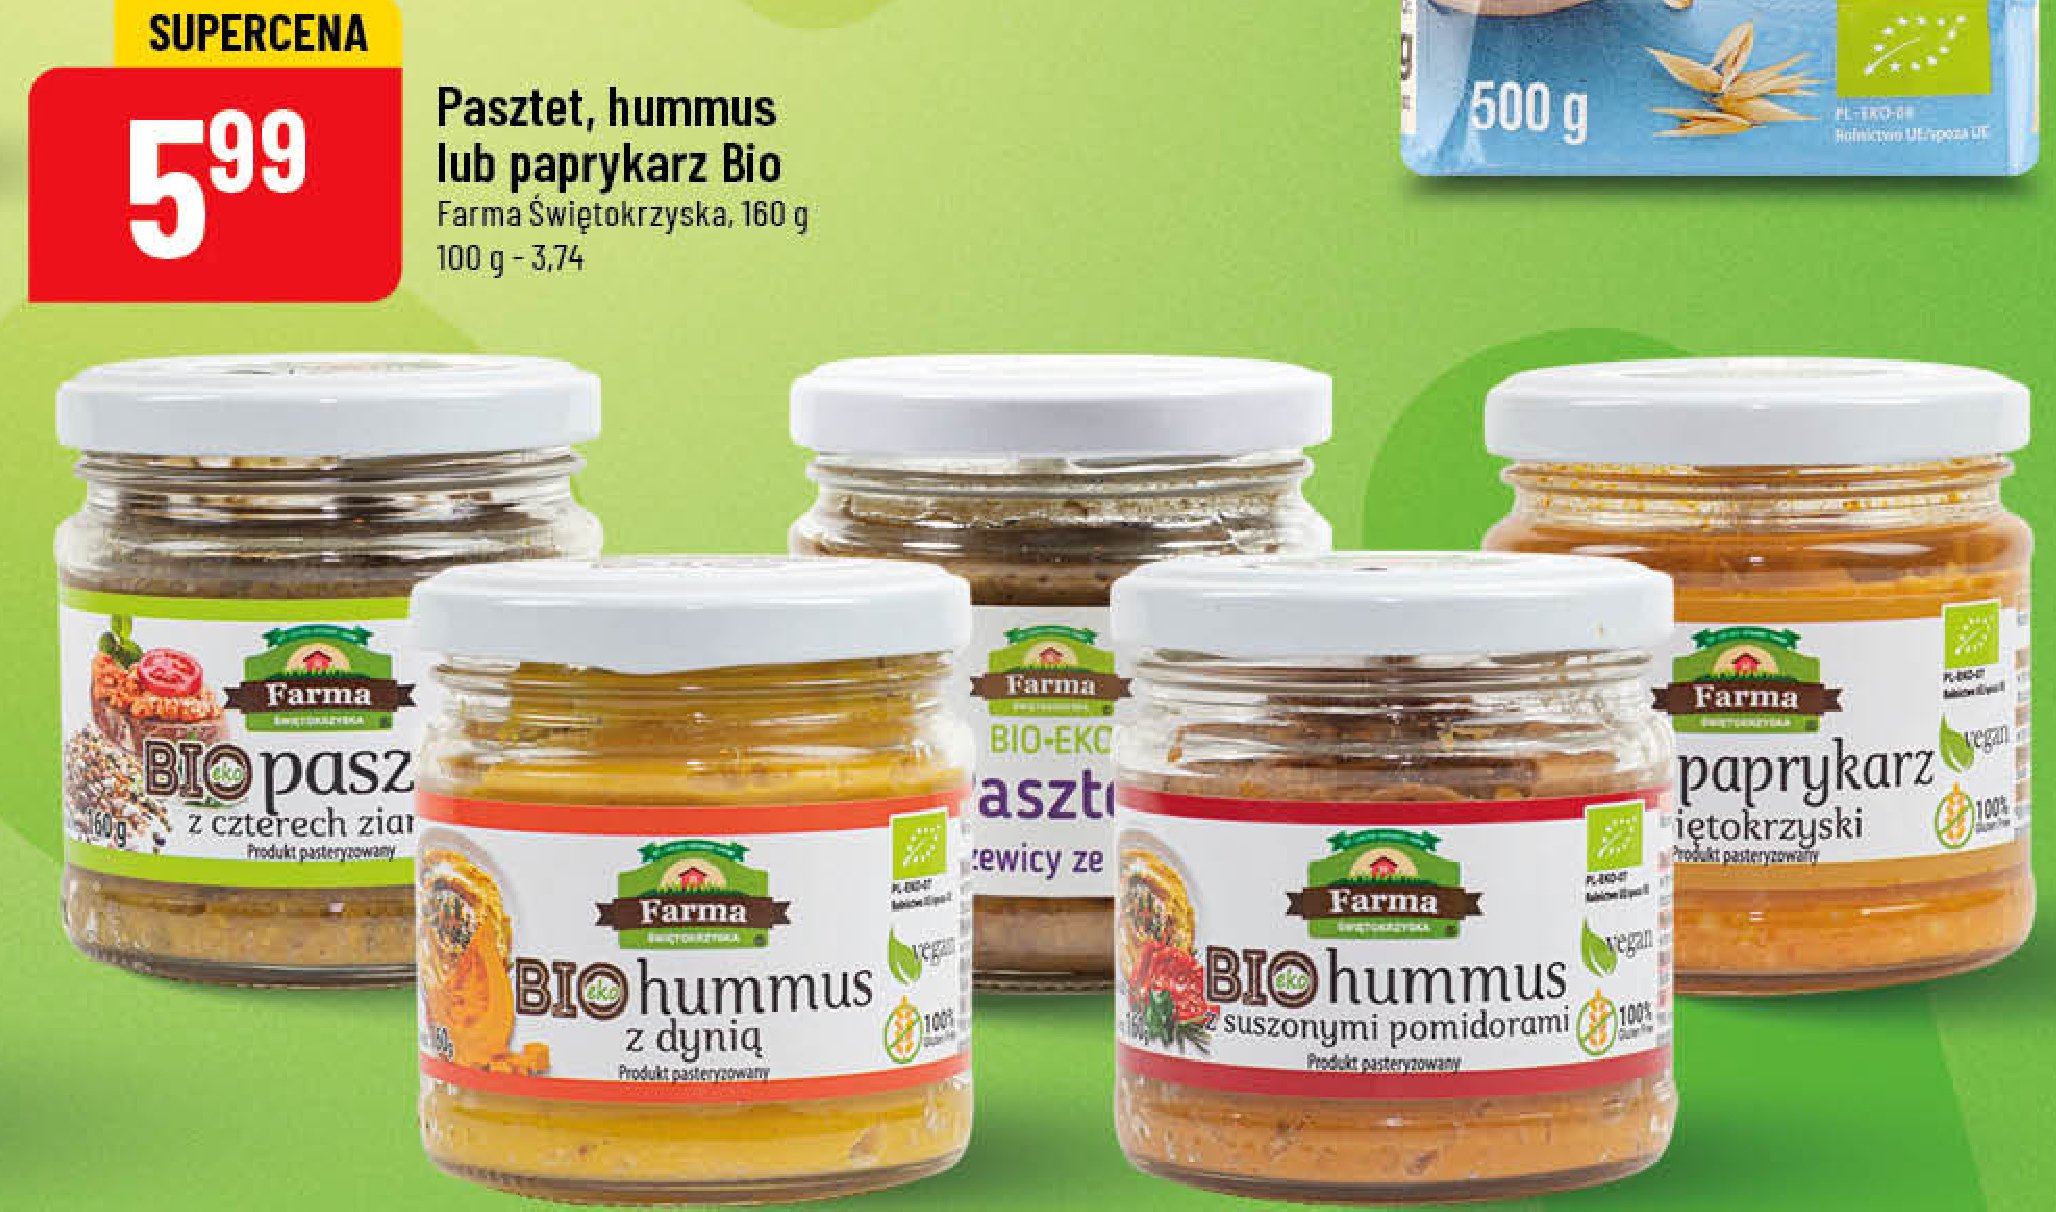 Hummus z suszonymi pomidorami Farma świętokrzyska promocja